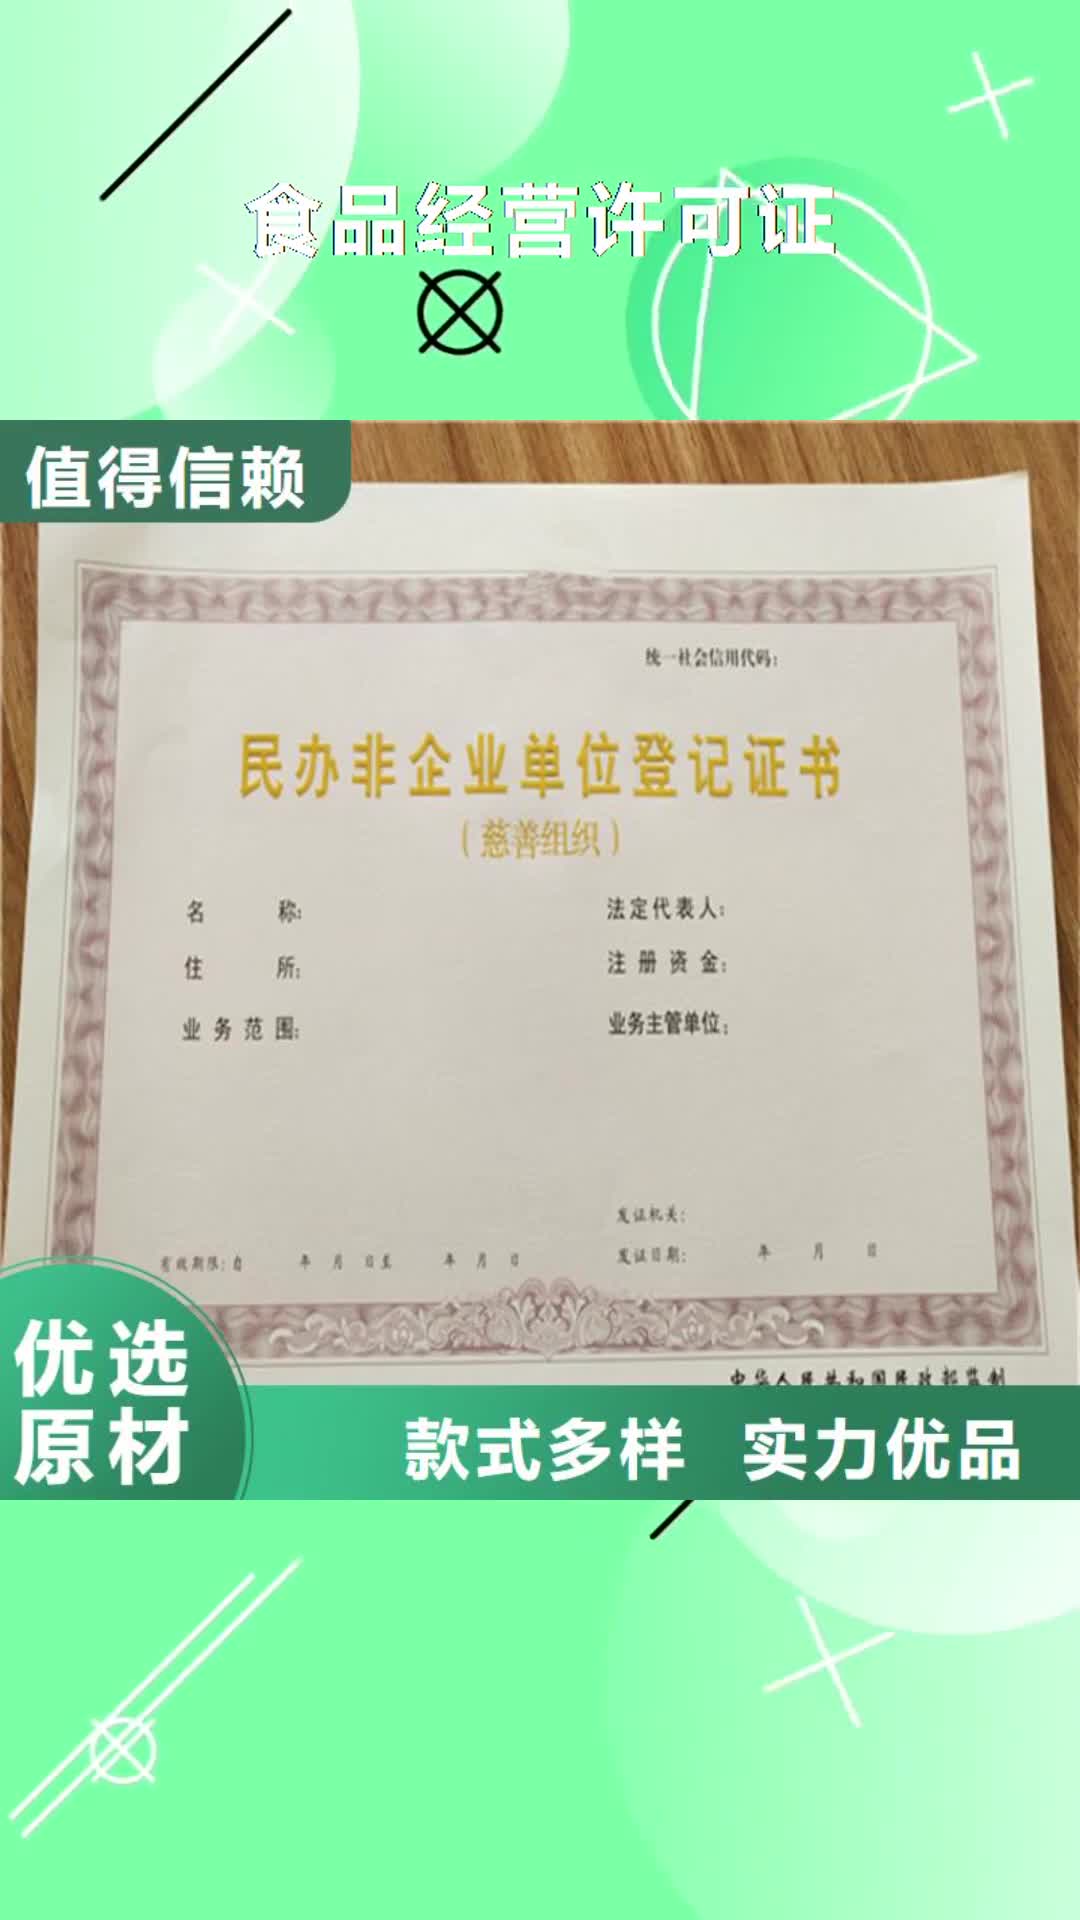 钦州【食品经营许可证】,营业执照印刷出厂价